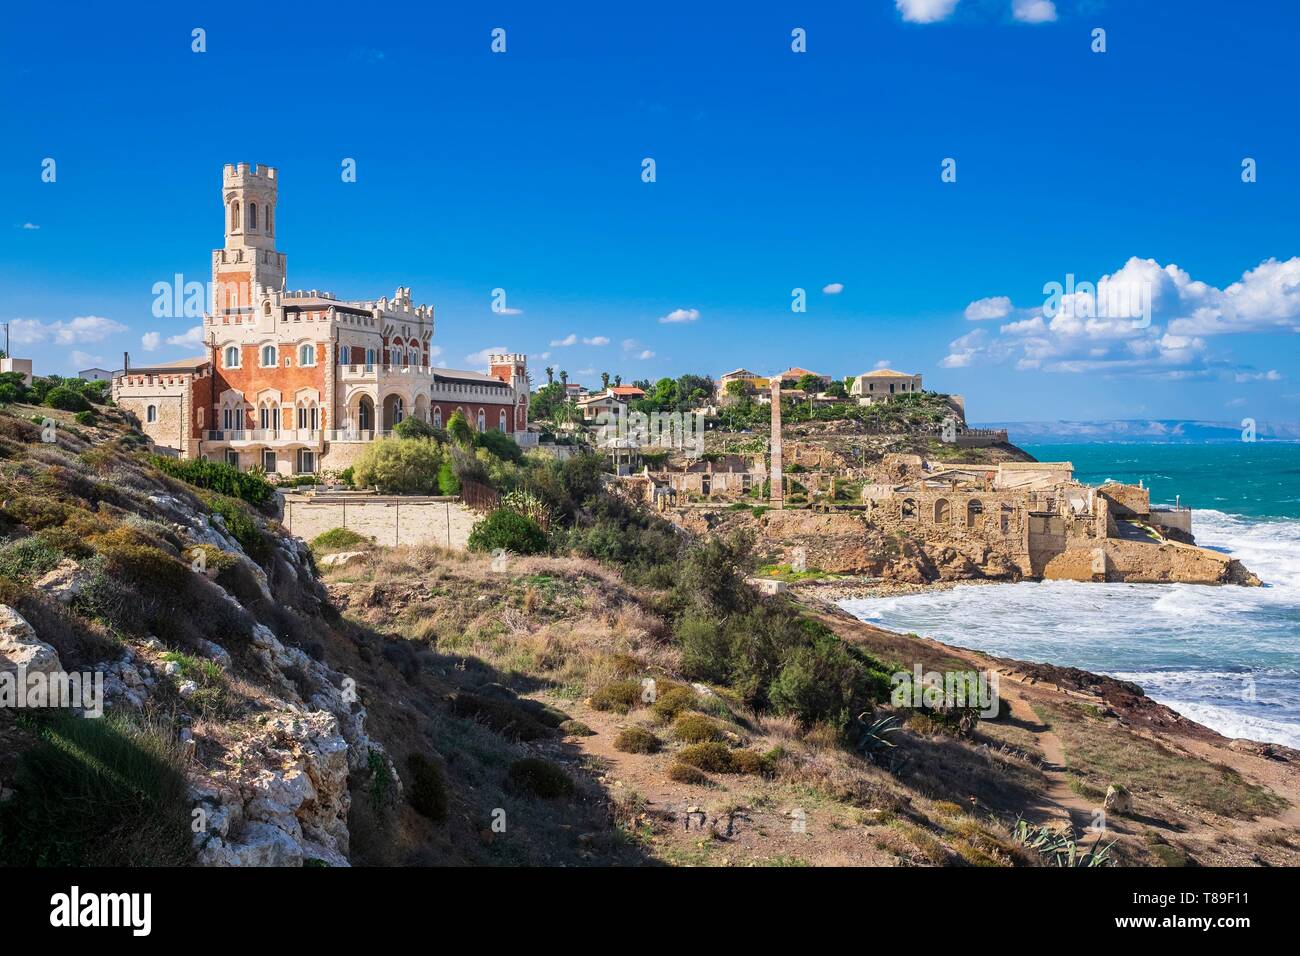 Italy, Sicily, Portopalo di Capo Passero, Castello Tafuri hotel Stock Photo